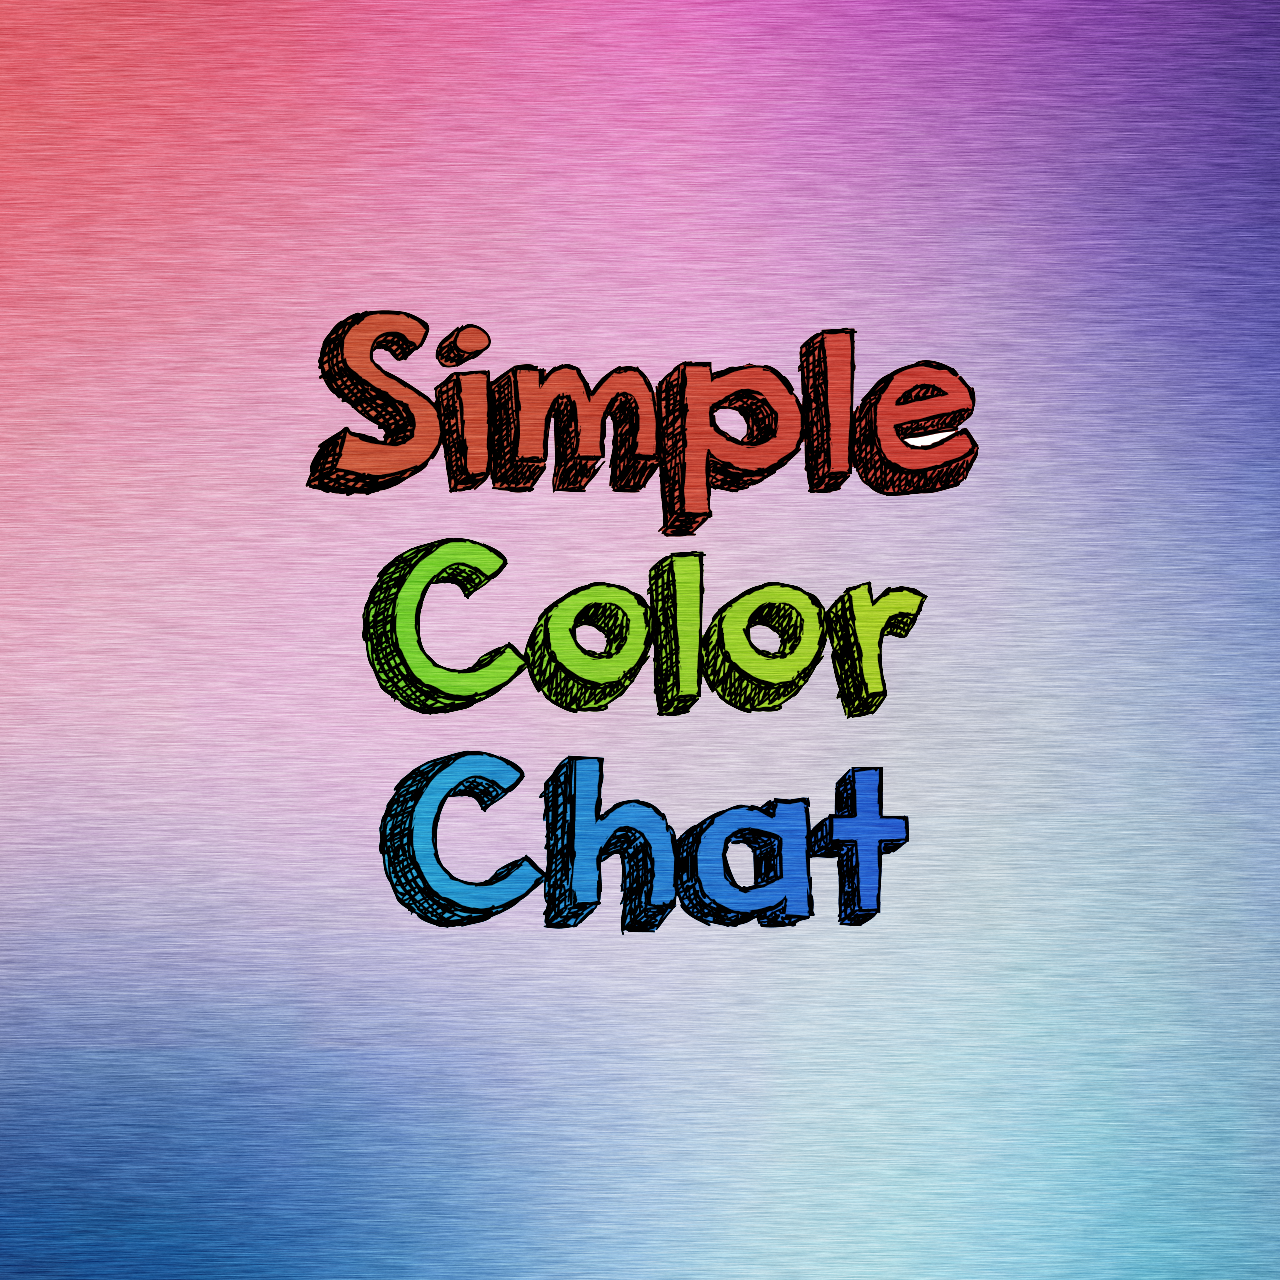 Spigot chat color